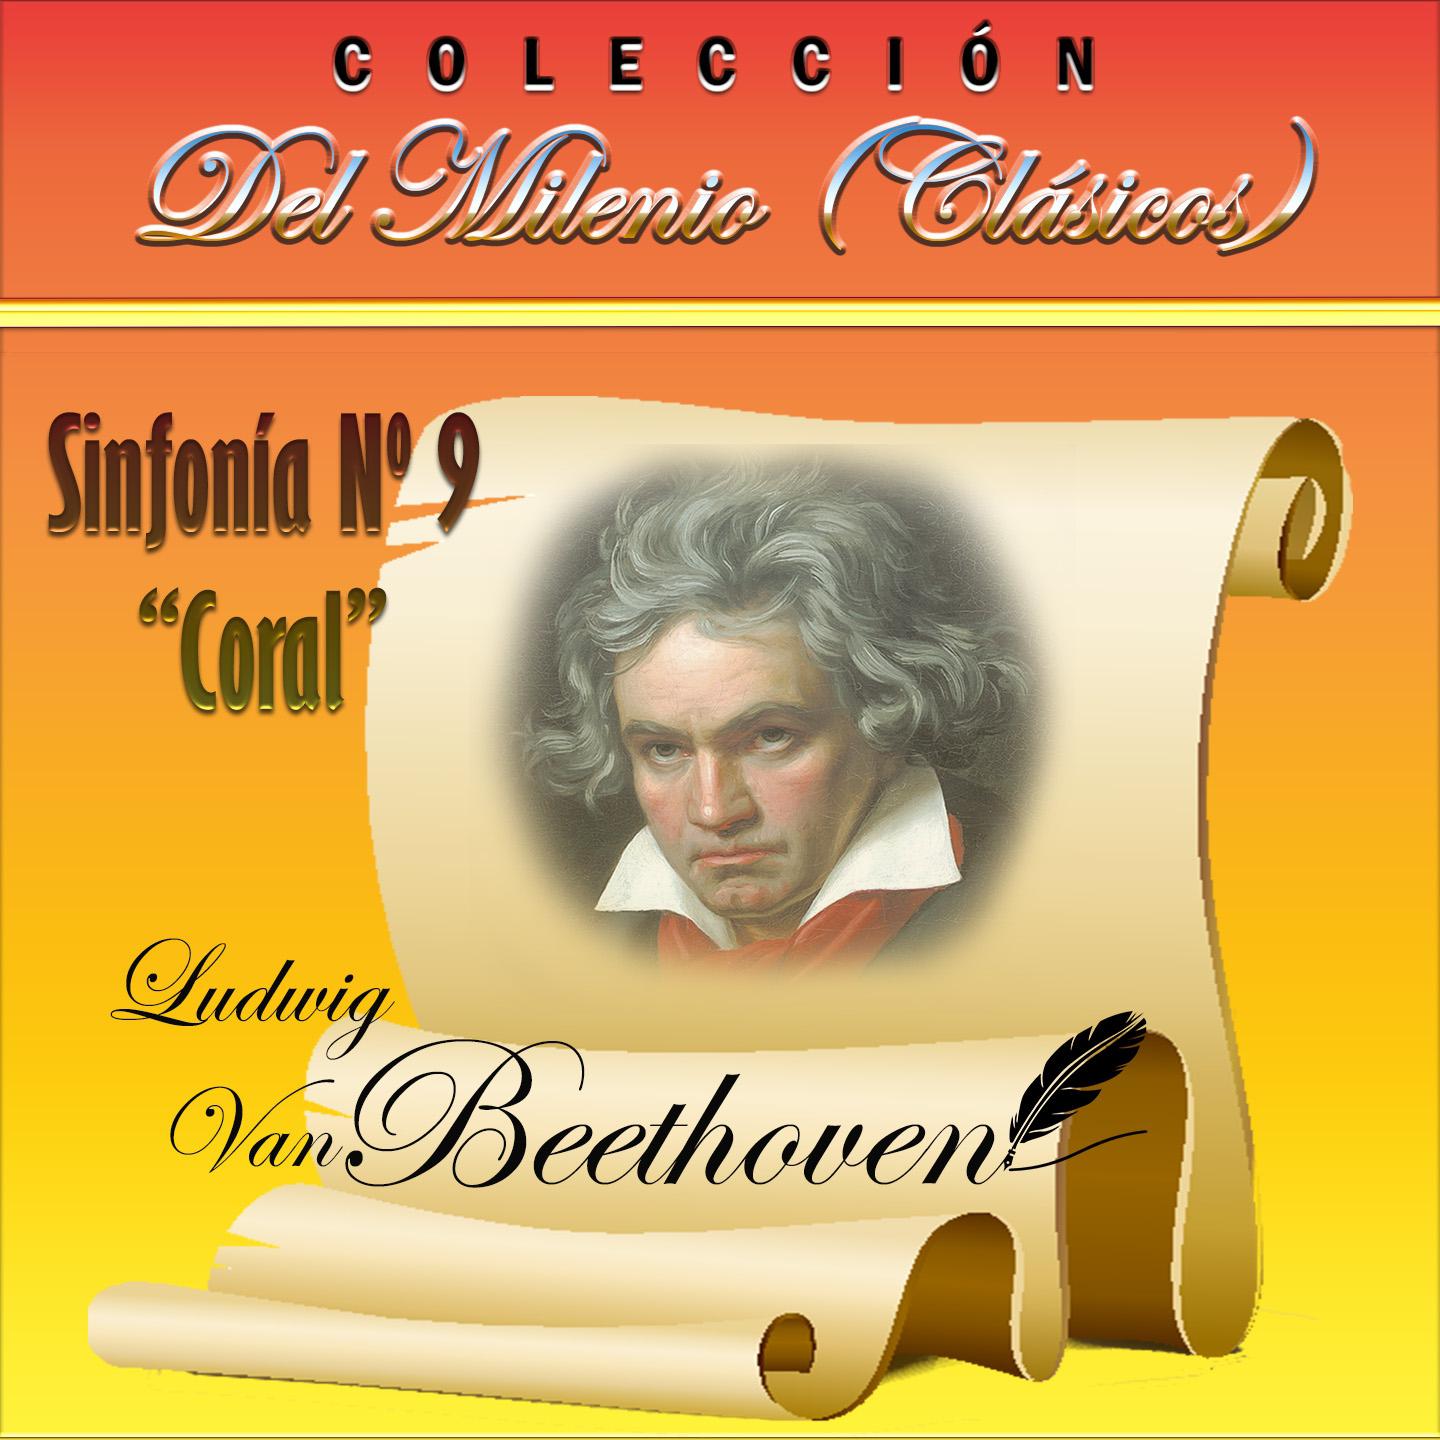 Coleccio n del Milenio: Sinfoni a No. 9 " Coral"